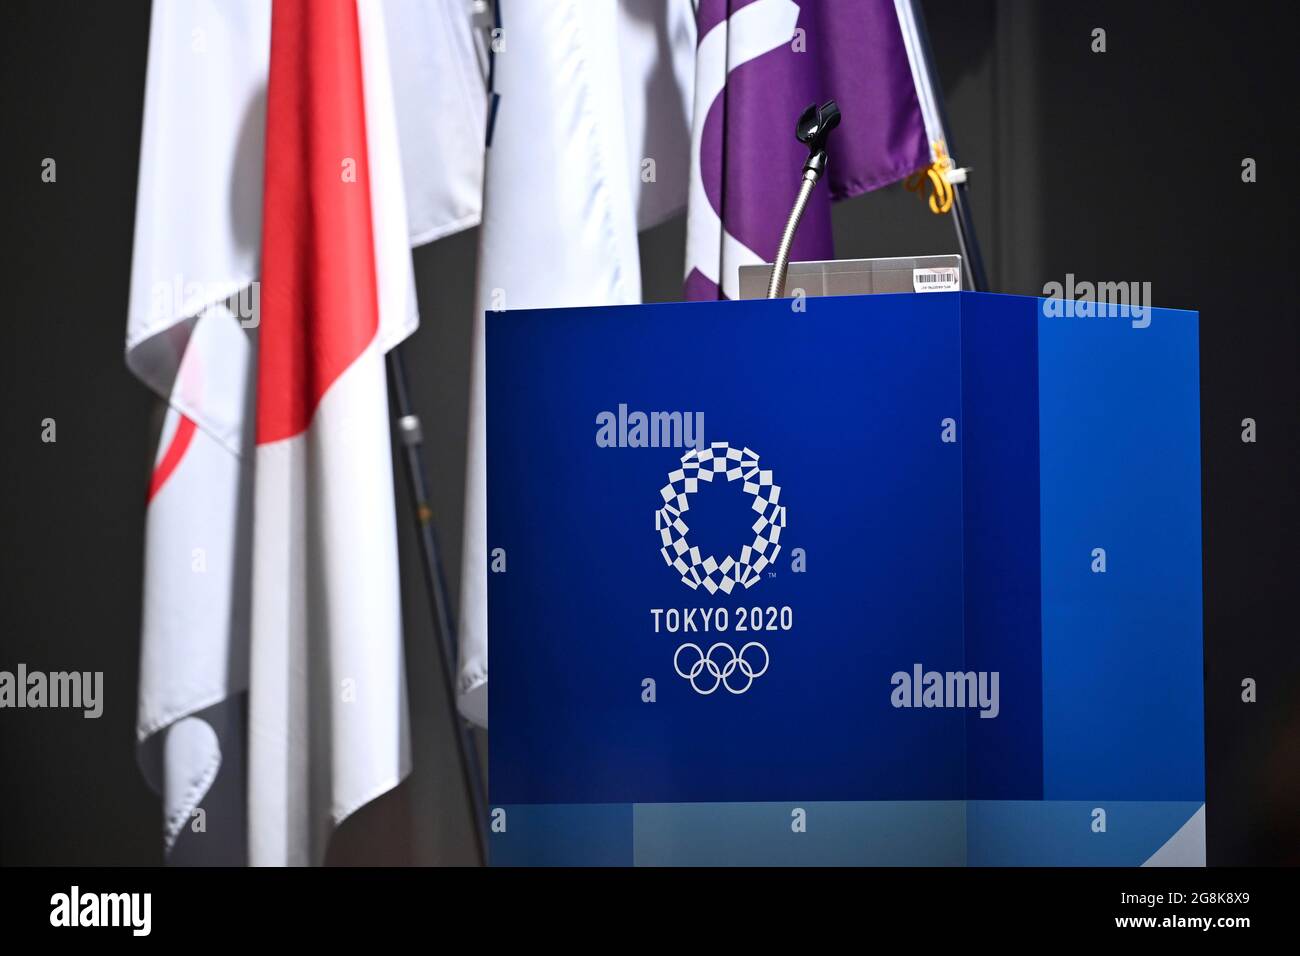 Edge Motif, conferenza stampa del CIO il 21 luglio 2021, leggio con anelli olimpici e logo Tokyo 2020. Olimpiadi estive 2020, da luglio 23. - 08.08.2021 a Tokyo/Giappone. Foto Stock